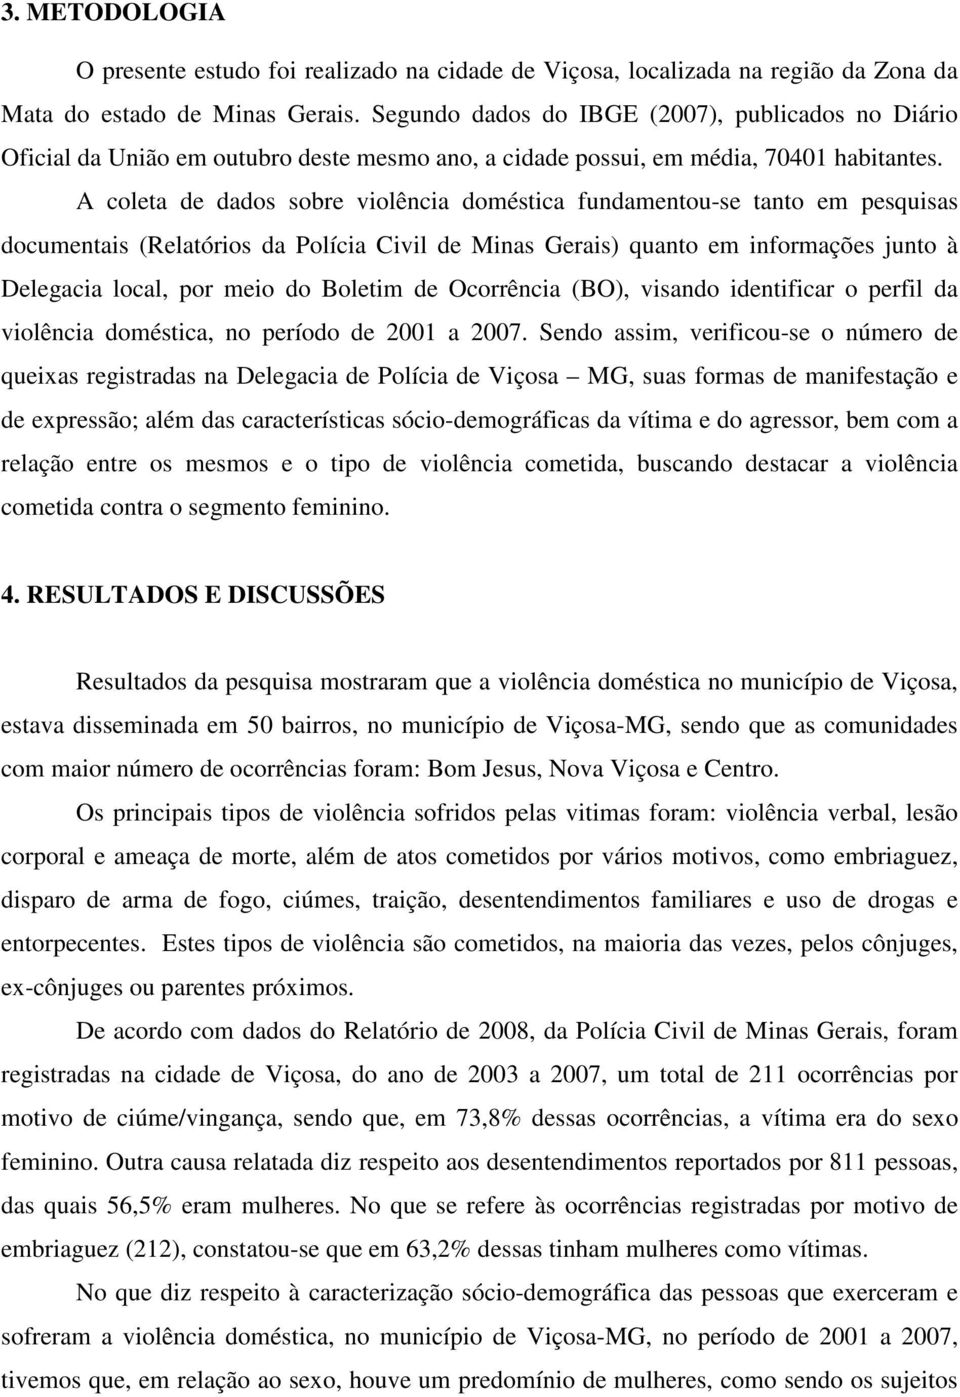 A coleta de dados sobre violência doméstica fundamentou-se tanto em pesquisas documentais (Relatórios da Polícia Civil de Minas Gerais) quanto em informações junto à Delegacia local, por meio do